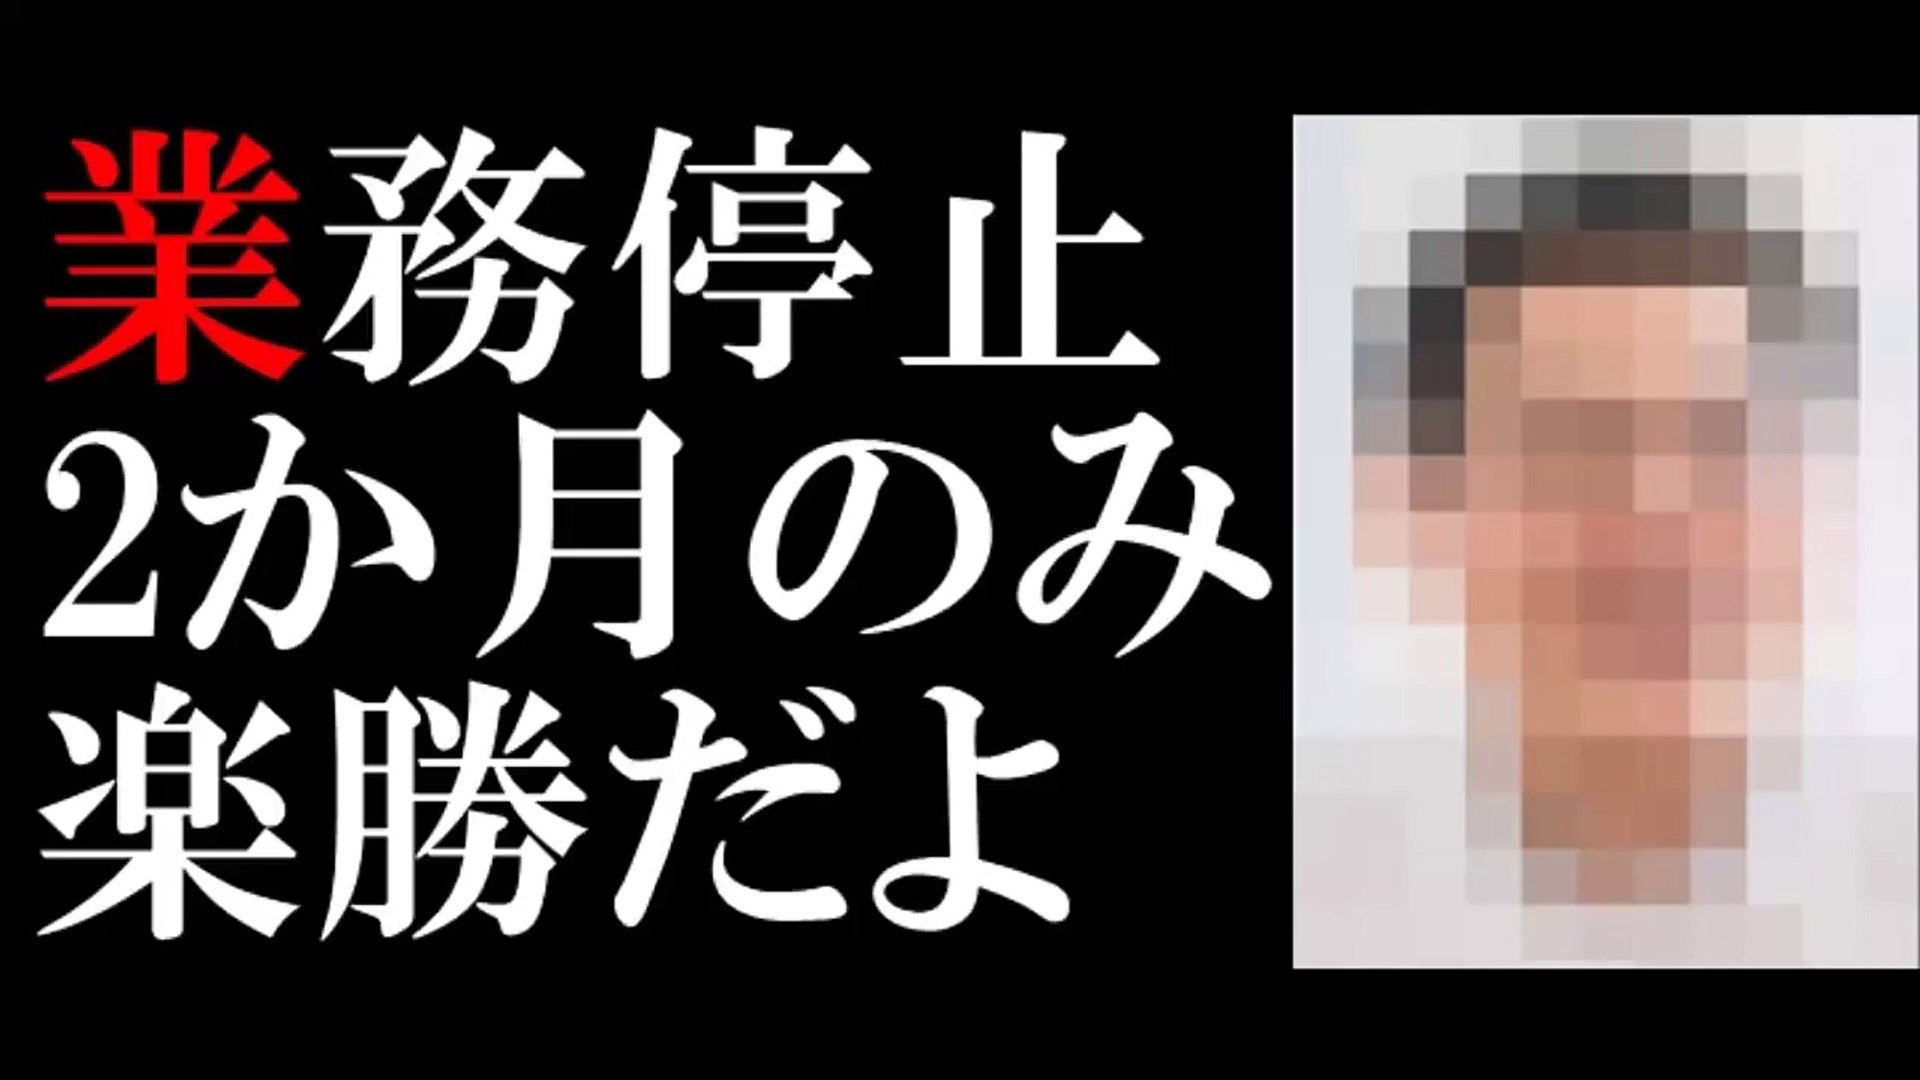 札幌タクシー 大暴れ30代弁護士 エリート 素性と軽すぎる処分 Yxl3glunqze Video Dailymotion